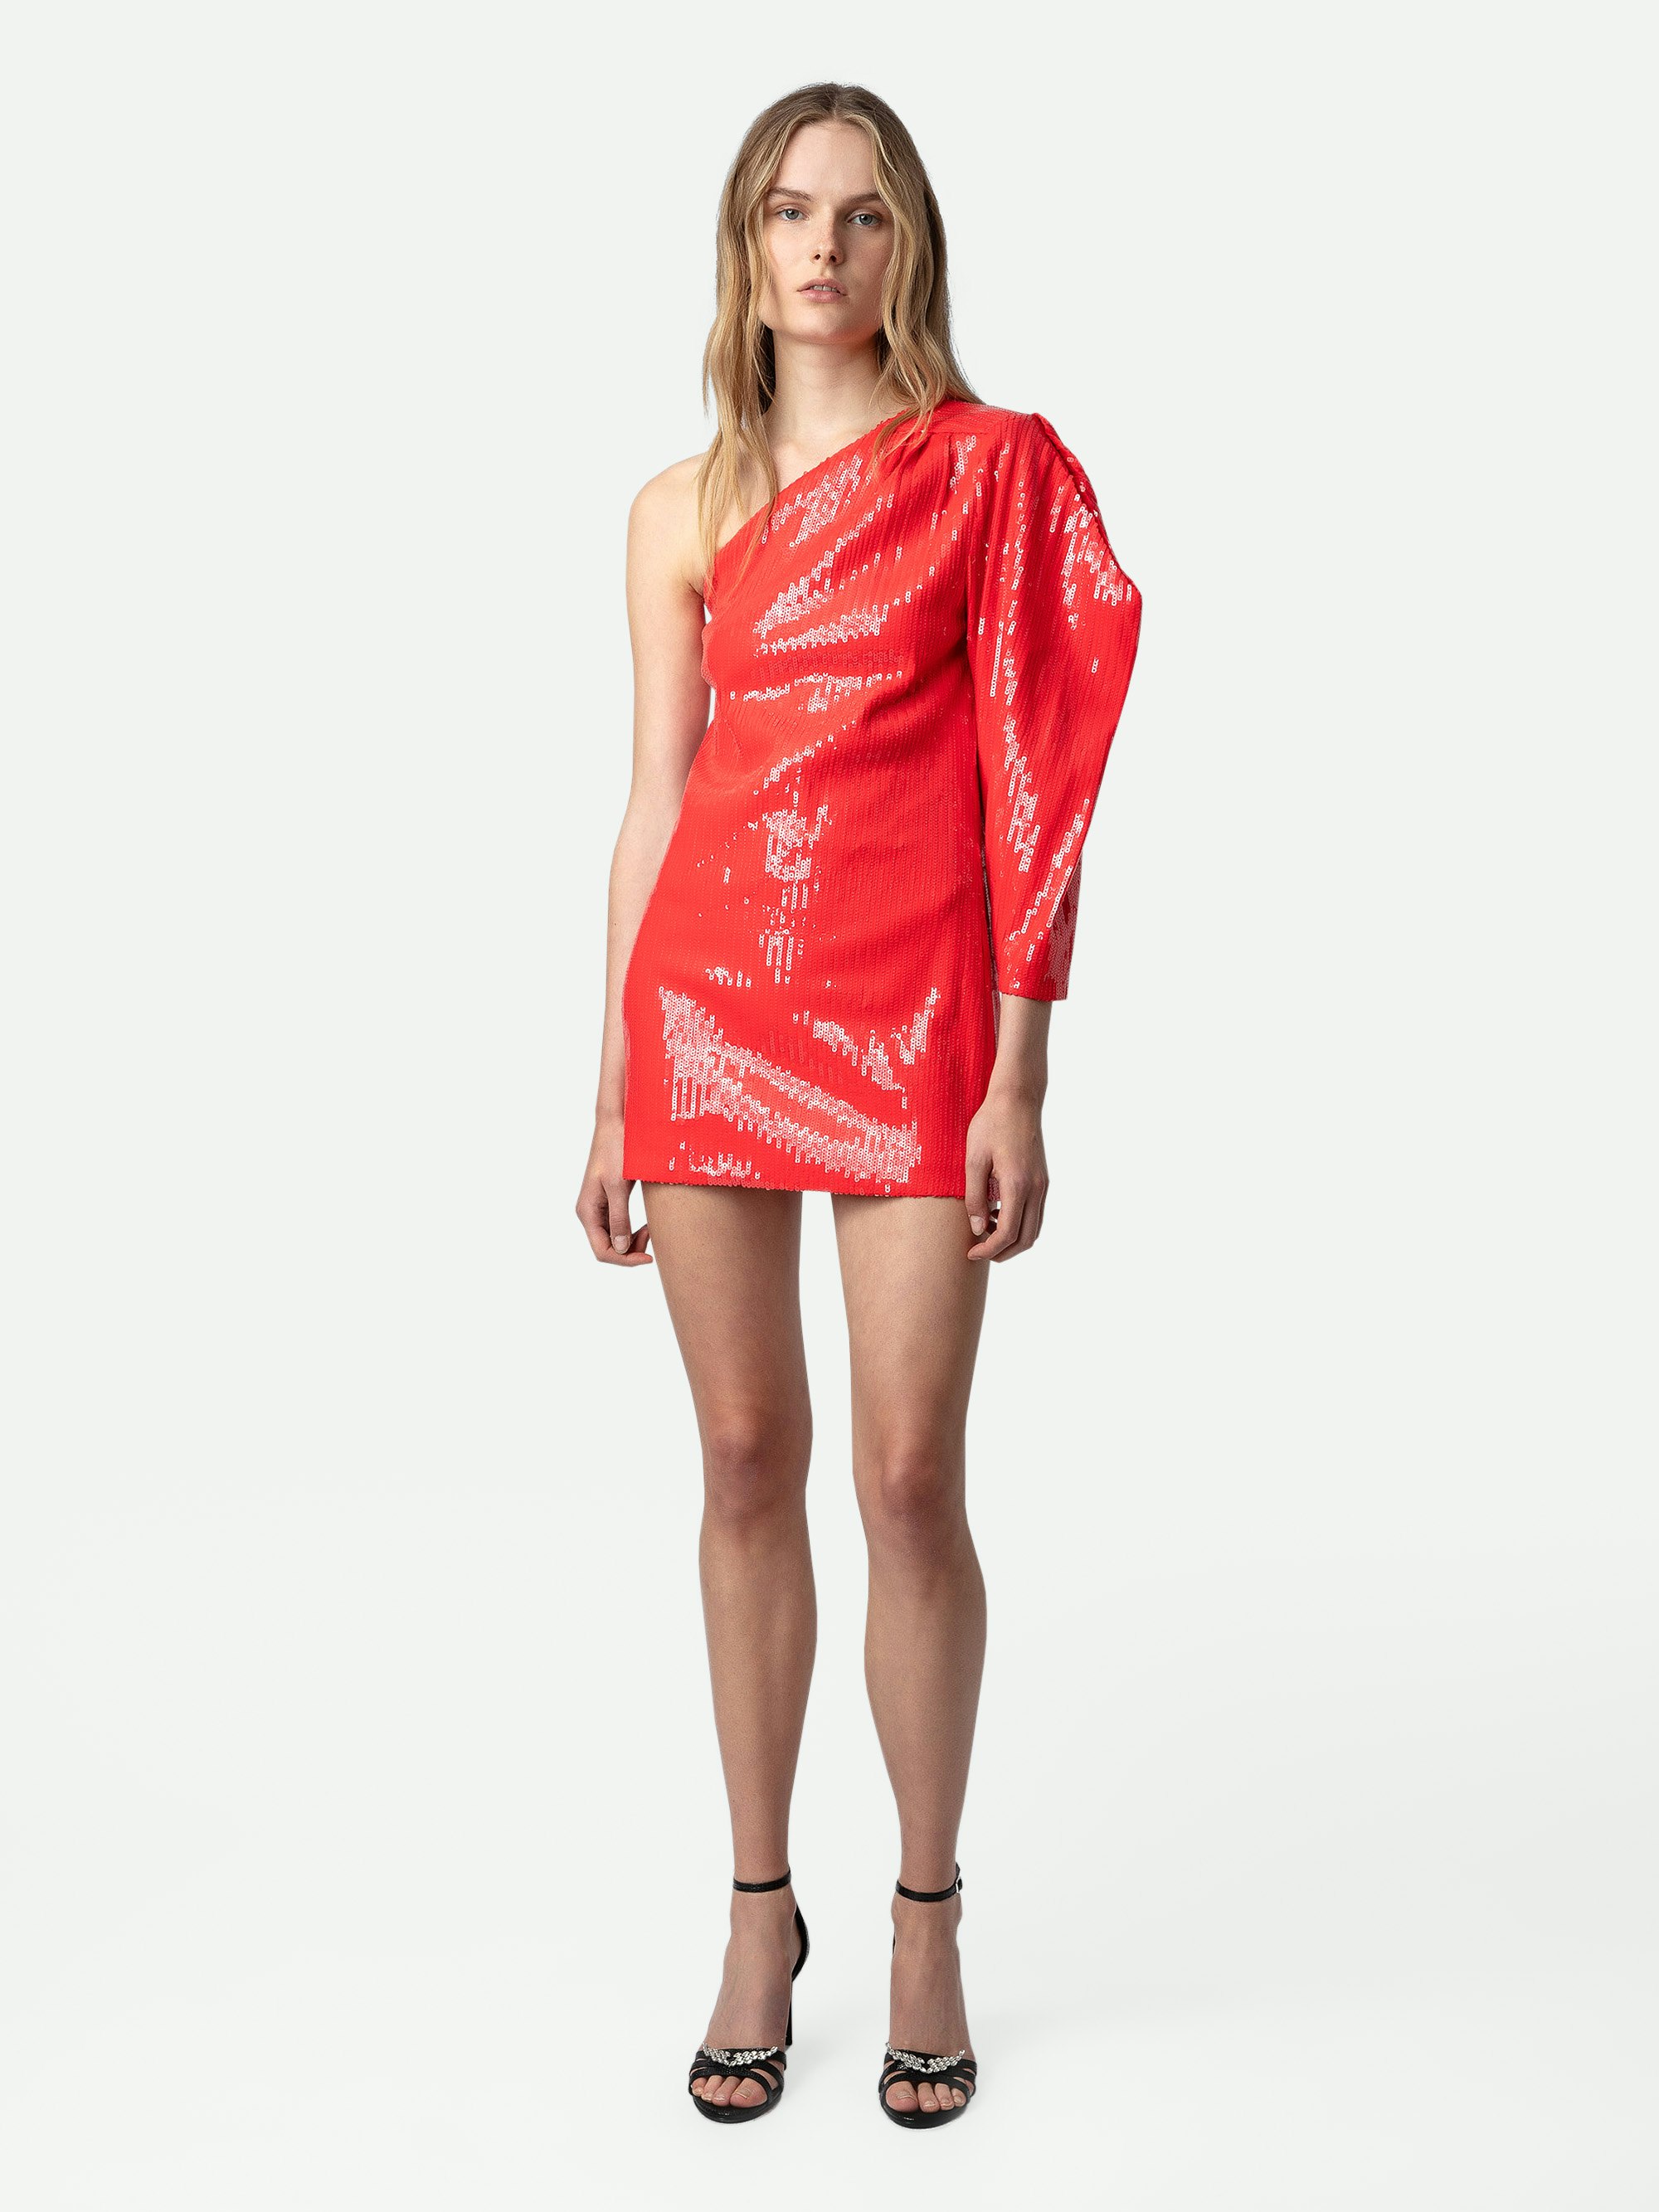 Kleid Roely Pailletten - Kurzes, rotes Kleid mit Pailletten und asymmetrischem, drapiertem Ärmel.